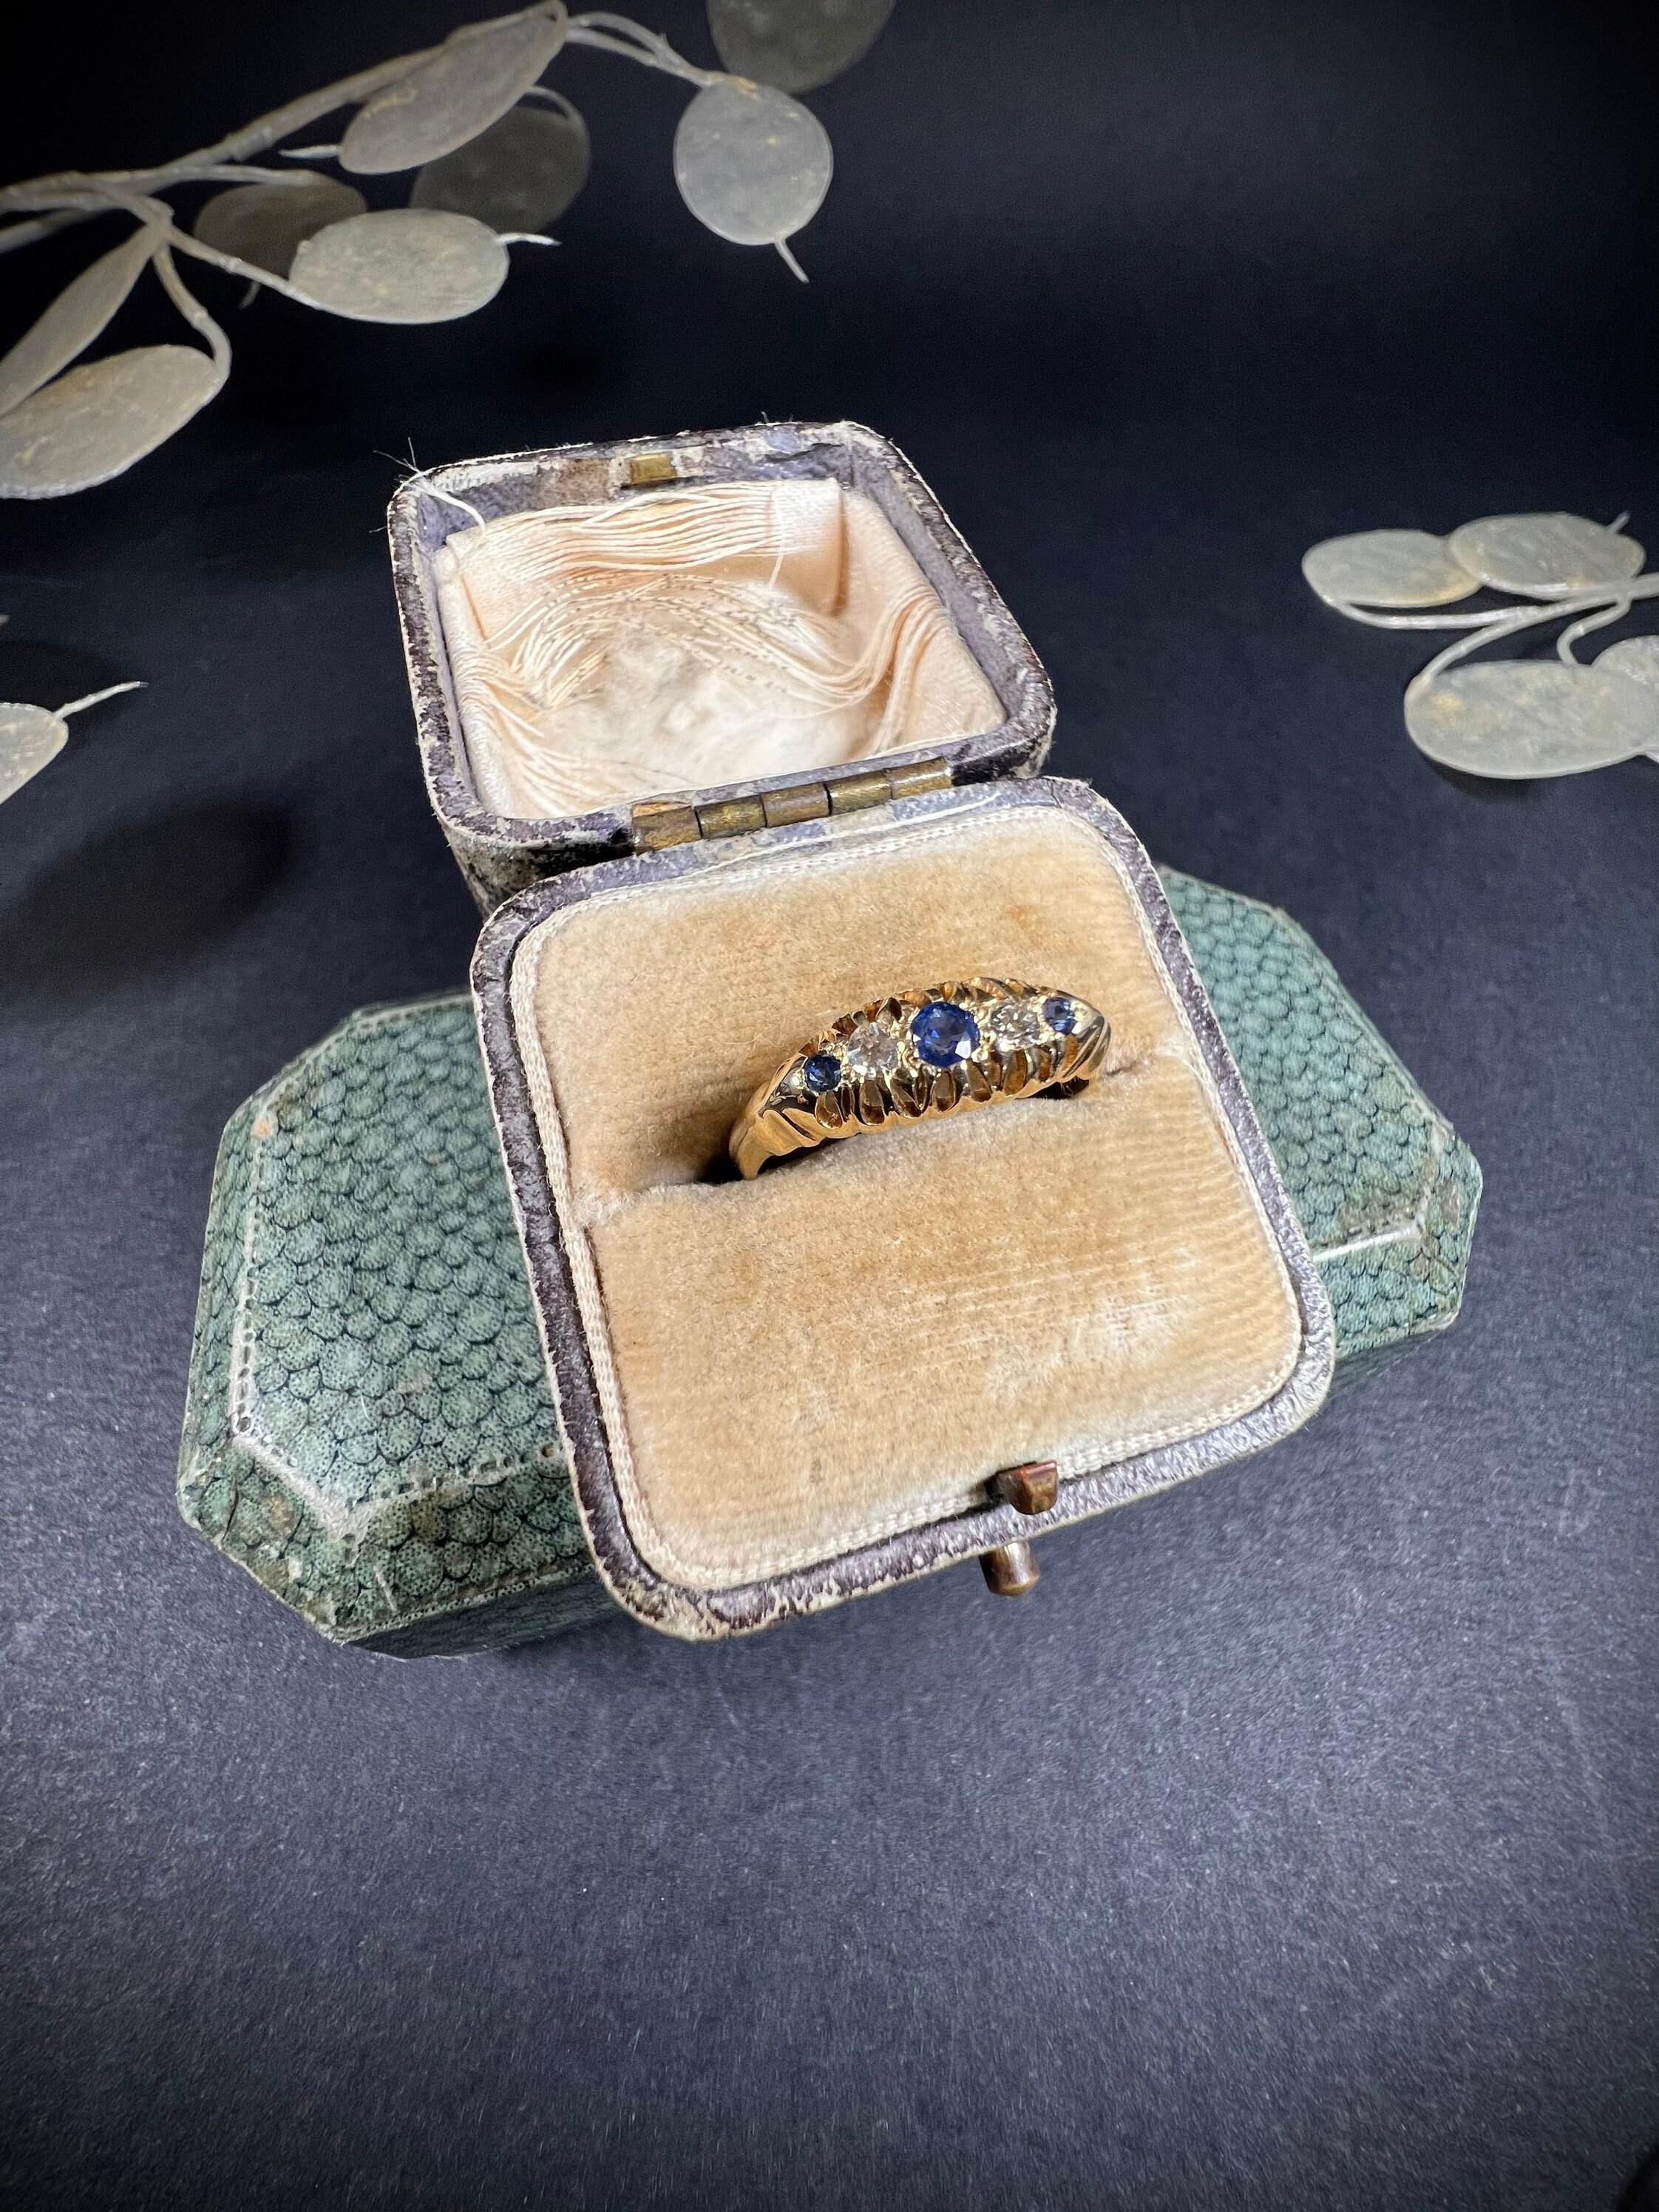 Bague tzigane ancienne 

Or 18 carats 

Poinçonné Birmingham 1920

Magnifique petite bague gitane ancienne. Serti de saphirs naturels et de diamants en alternance. Monté en or 18ct, avec le poinçon complet. 

La hauteur de l'anneau est d'environ 5,2